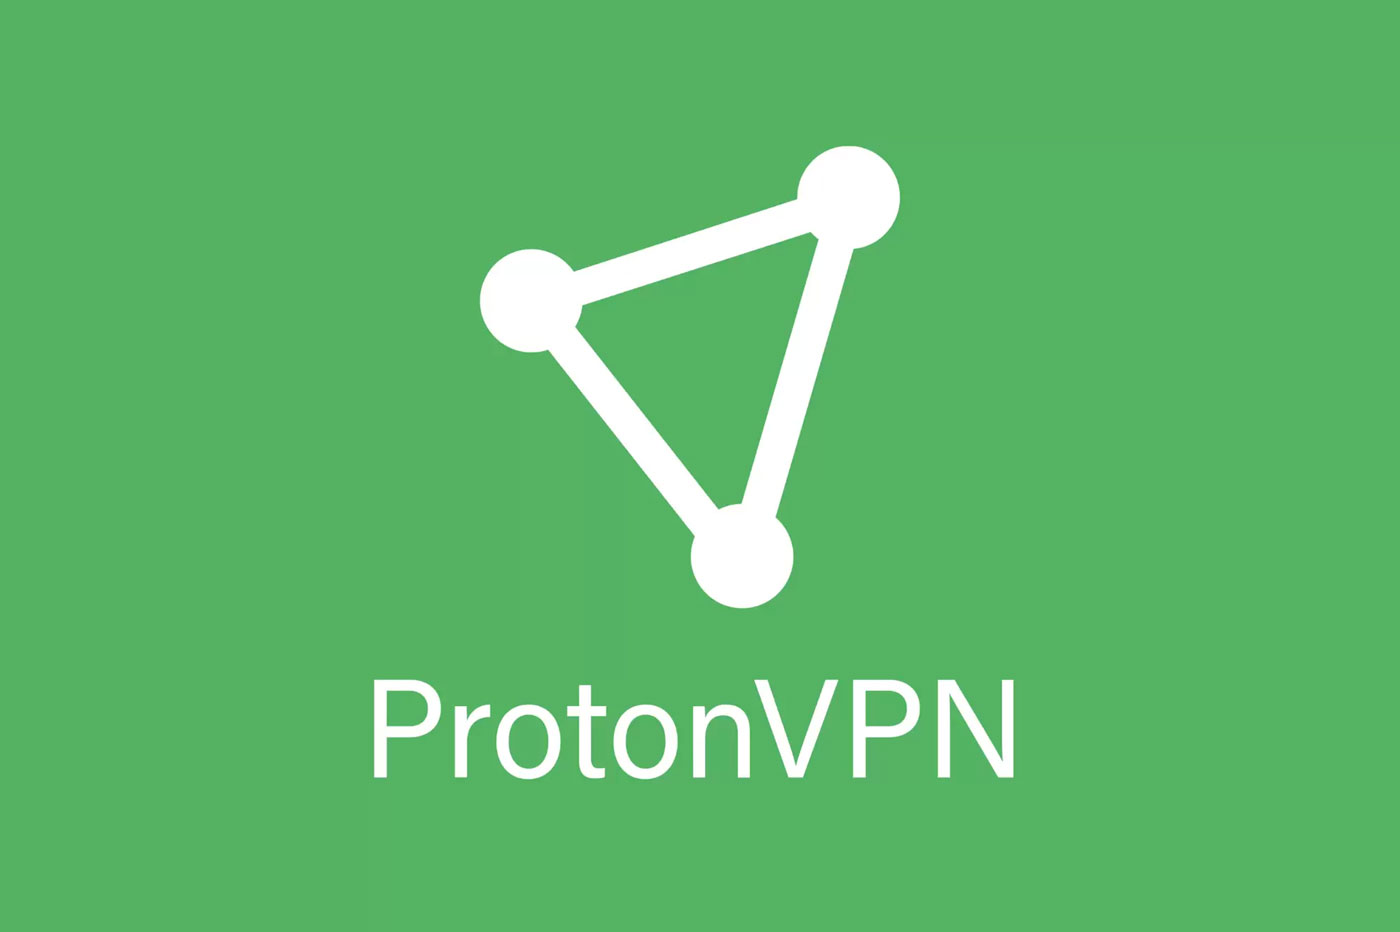 ProtonVPN - Best VPN for privacy runner-up